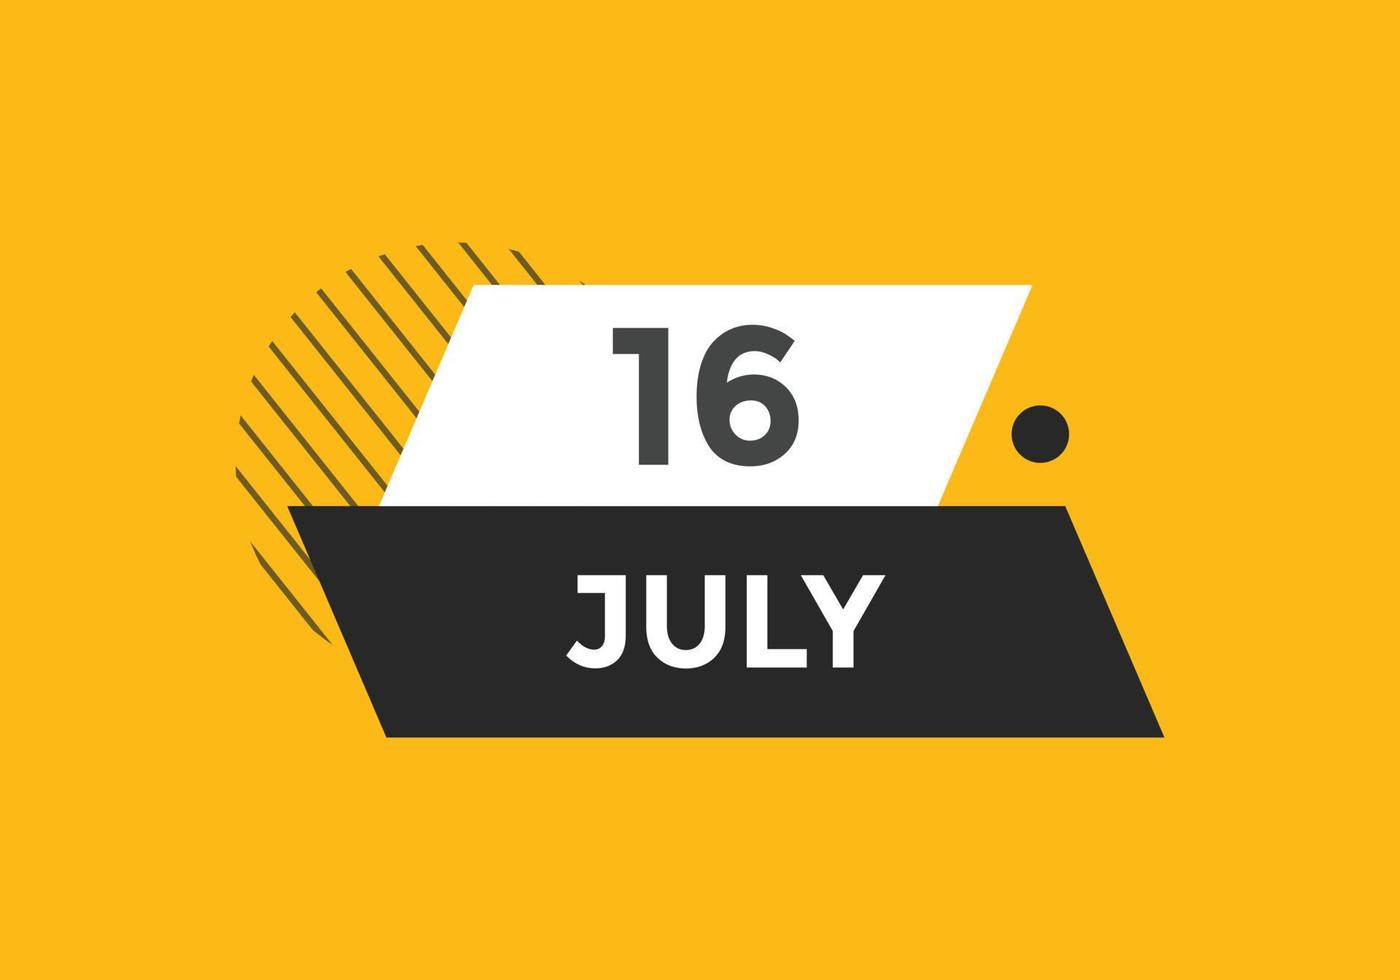 luglio 16 calendario promemoria. 16 ° luglio quotidiano calendario icona modello. calendario 16 ° luglio icona design modello. vettore illustrazione